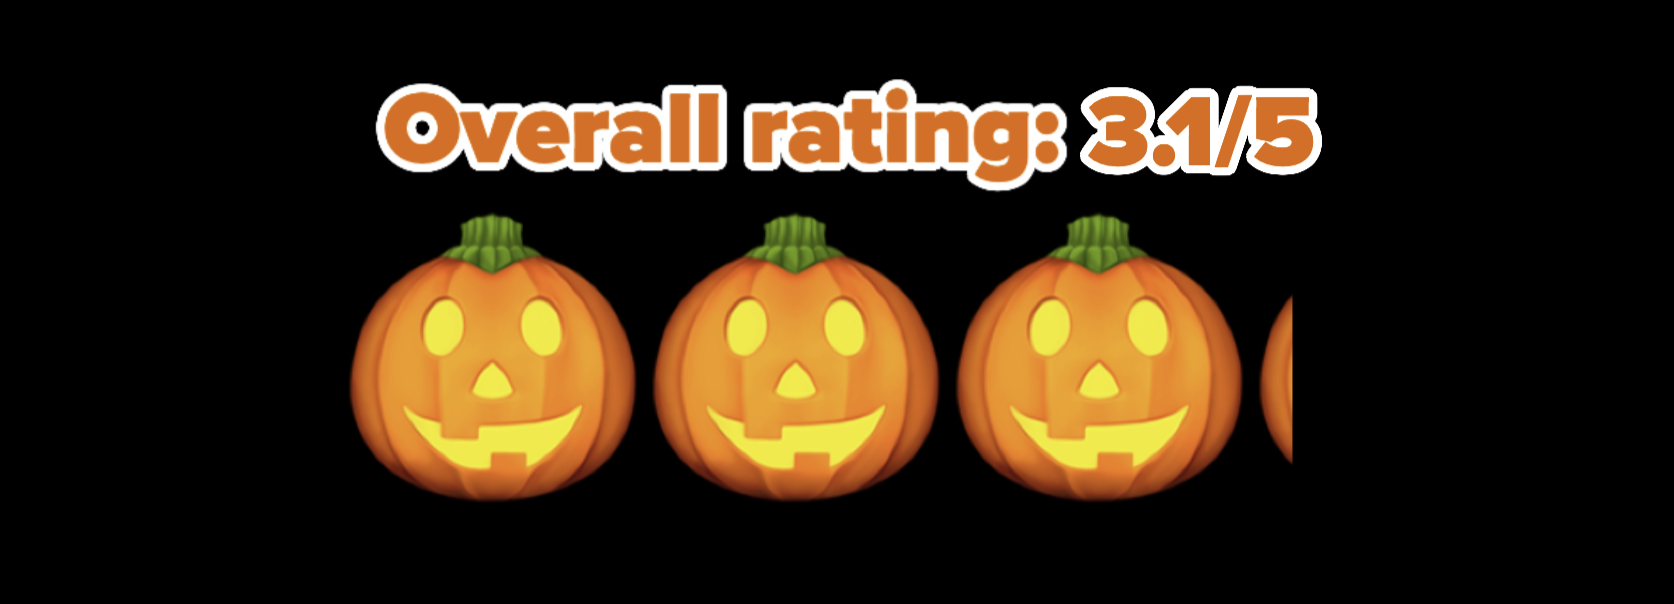 3.1/5 pumpkin rating